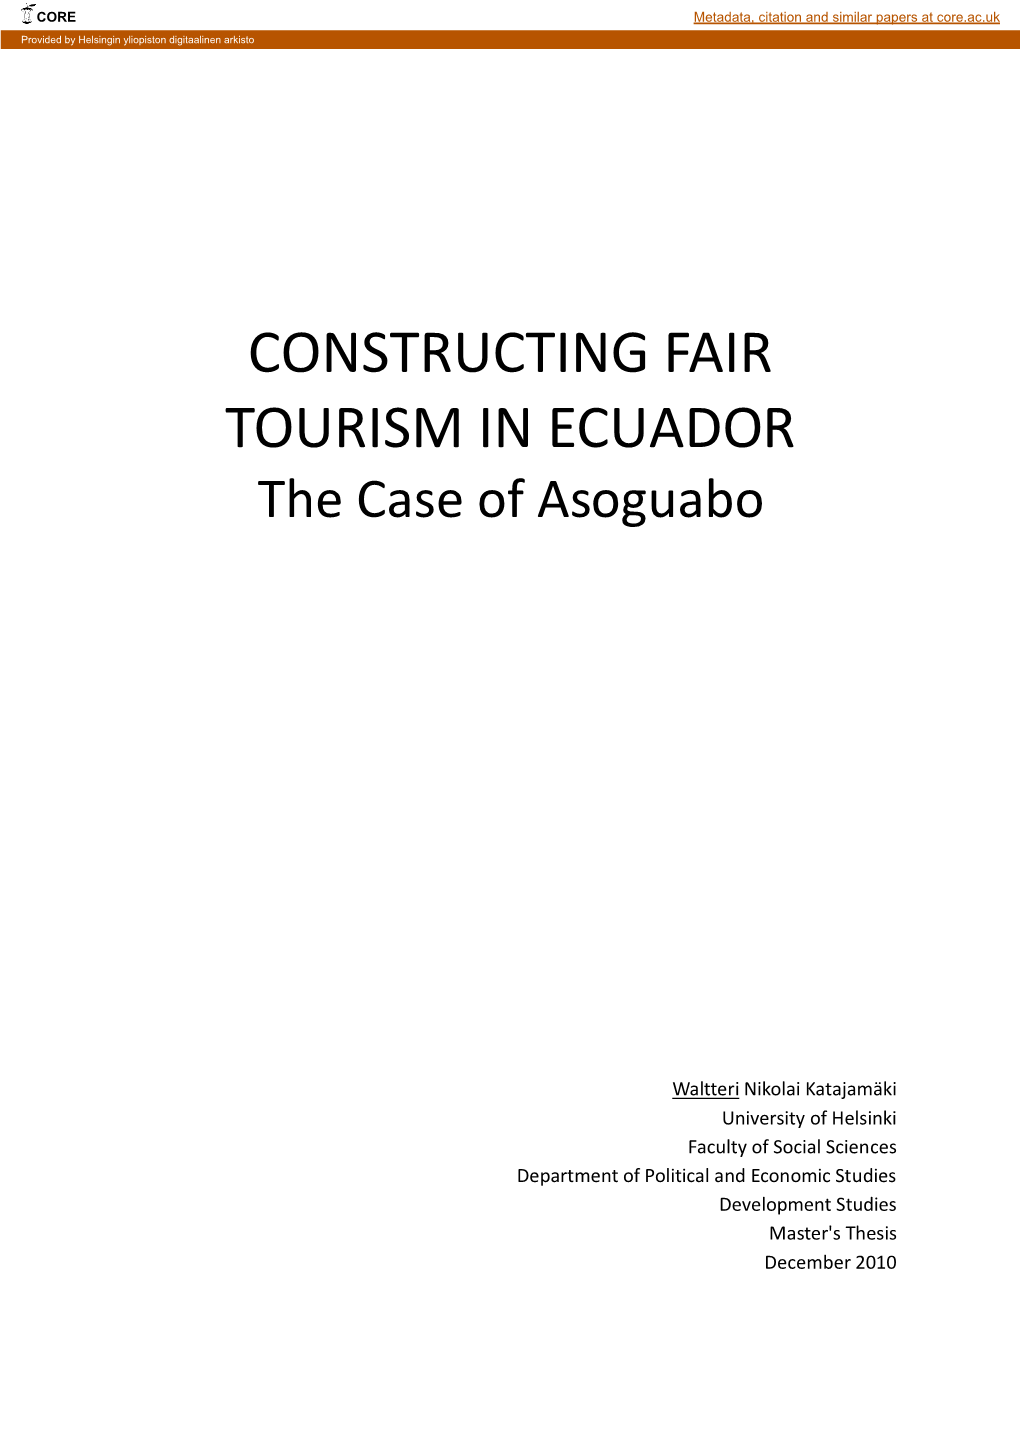 CONSTRUCTING FAIR TOURISM in ECUADOR the Case of Asoguabo